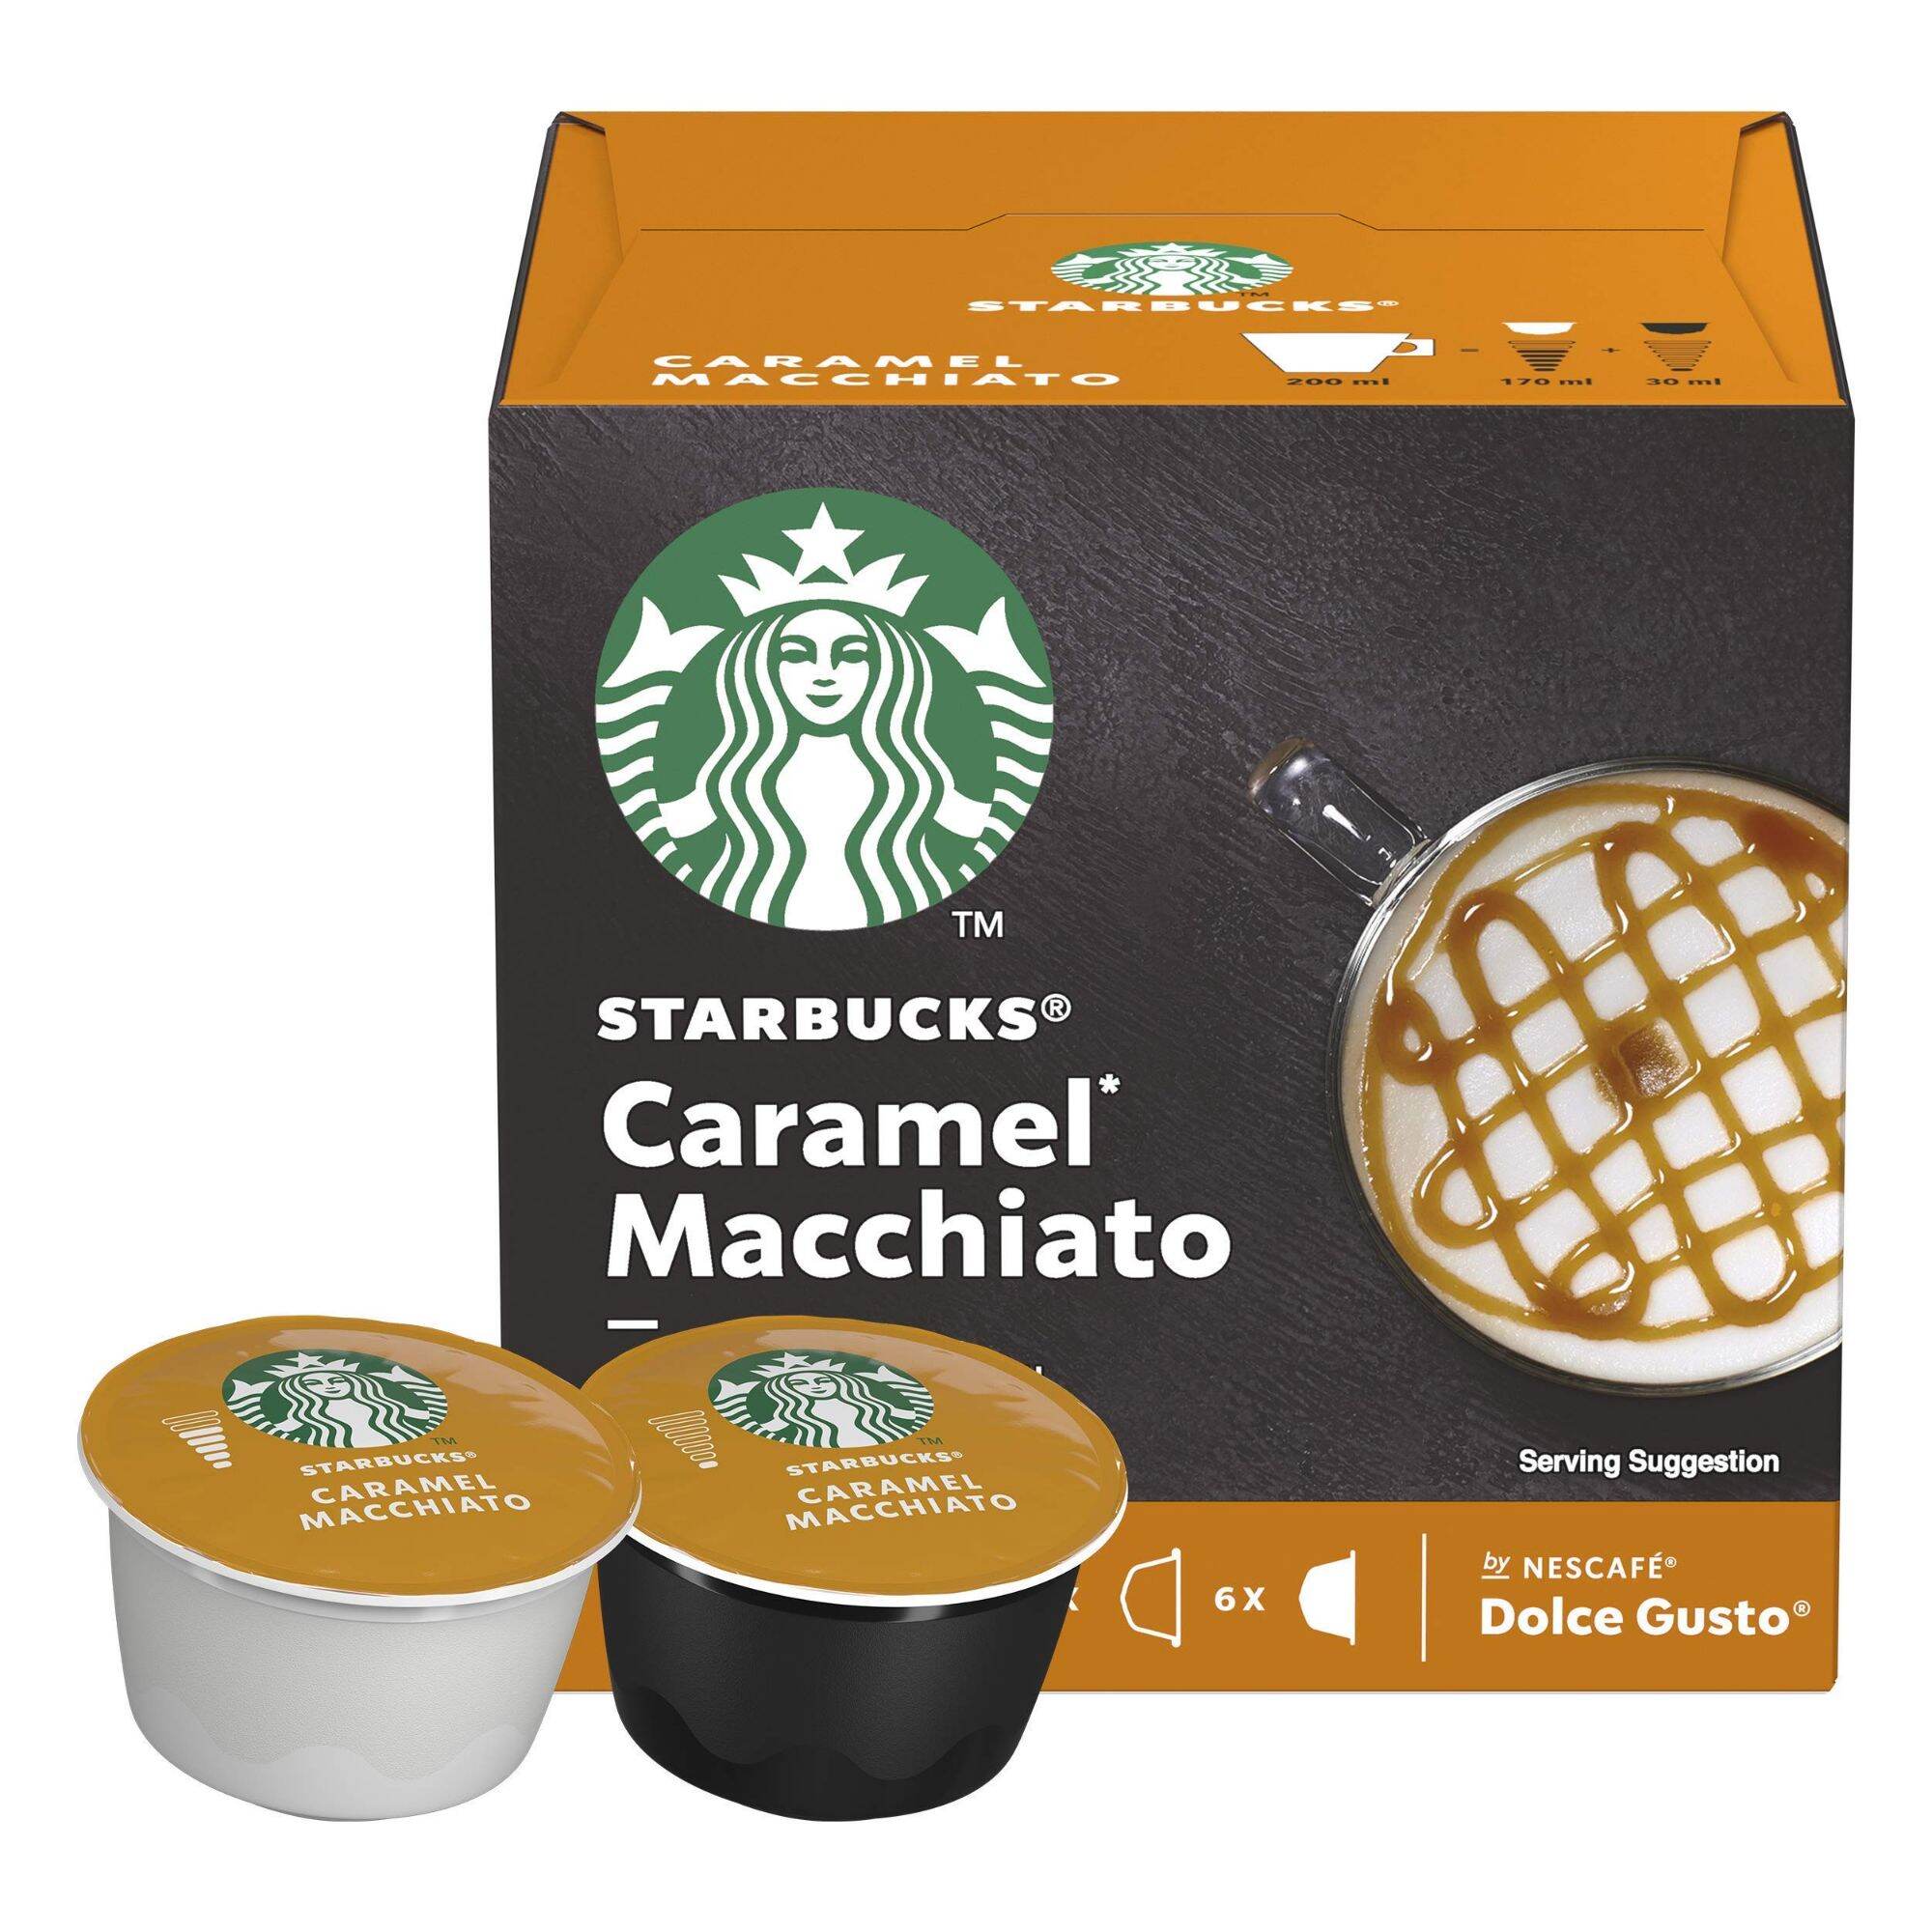 HCMHộp 12 viên Starbucks Caramel Macchiato cho máy Dolce Gusto xuất xứ UK